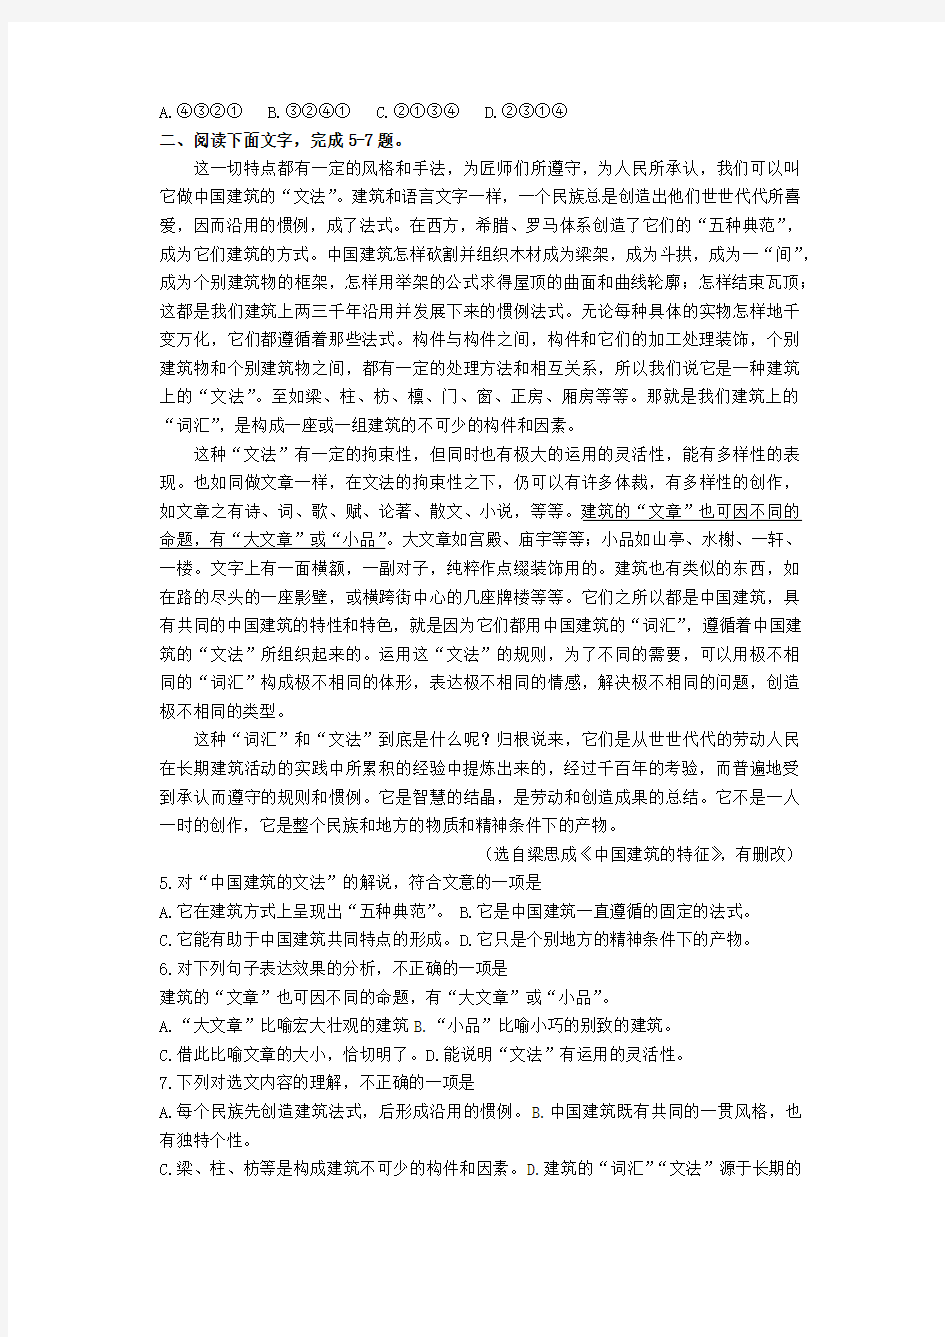 2019年安徽省普通高中学业水平考试真题(附答案)